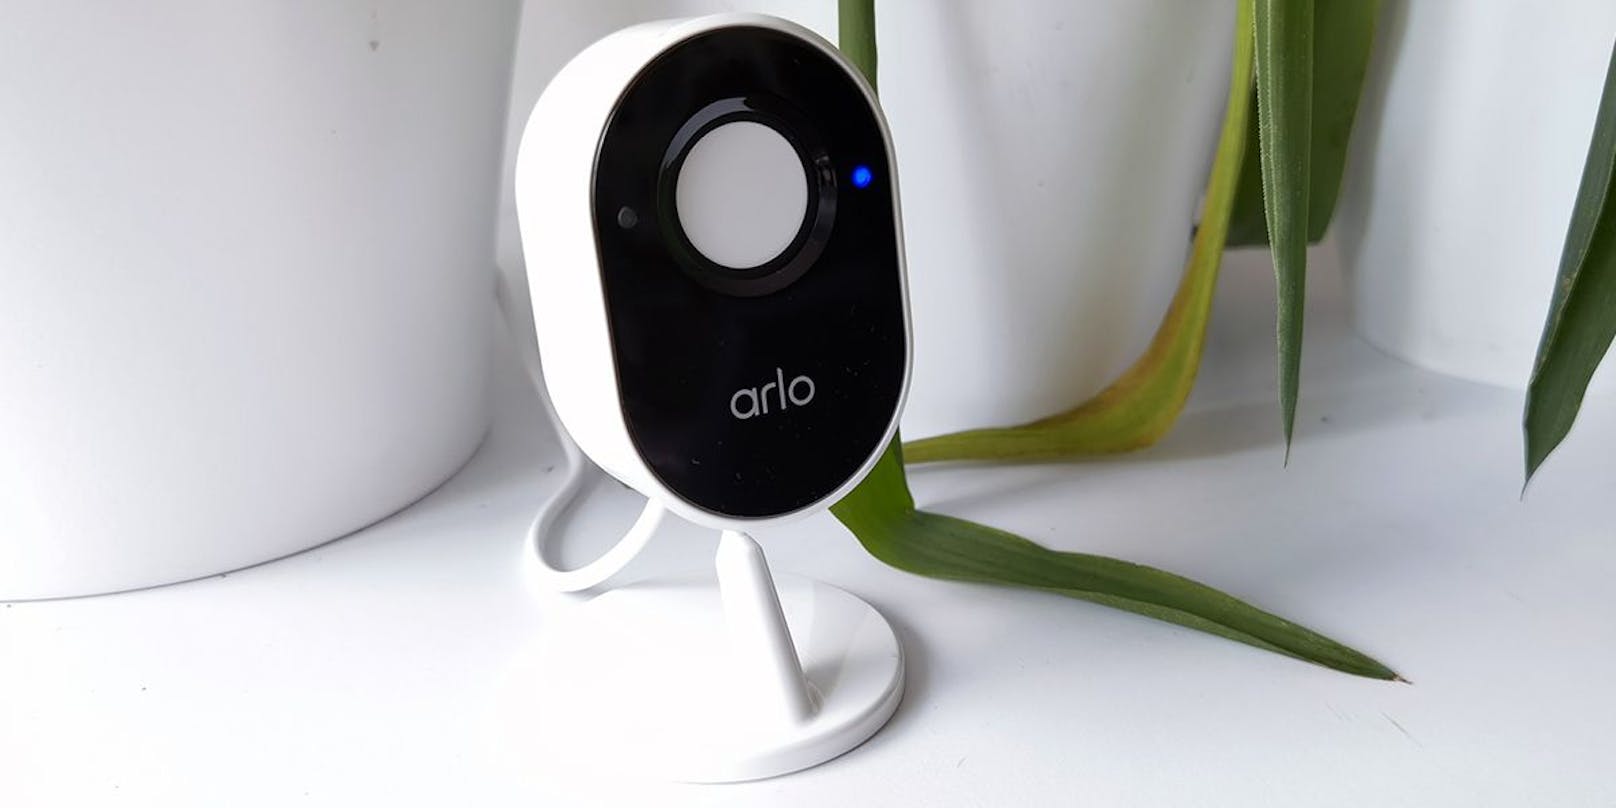 Wer sich Sorgen über die Sicherheit in seinem Zuhause, aber gleichzeitig auch um seine Privatsphäre macht, finden in der rund 130 Euro teuren Arlo Essential Indoor Camera ein smartes Modell, das nur wenige Features vermissen lässt.